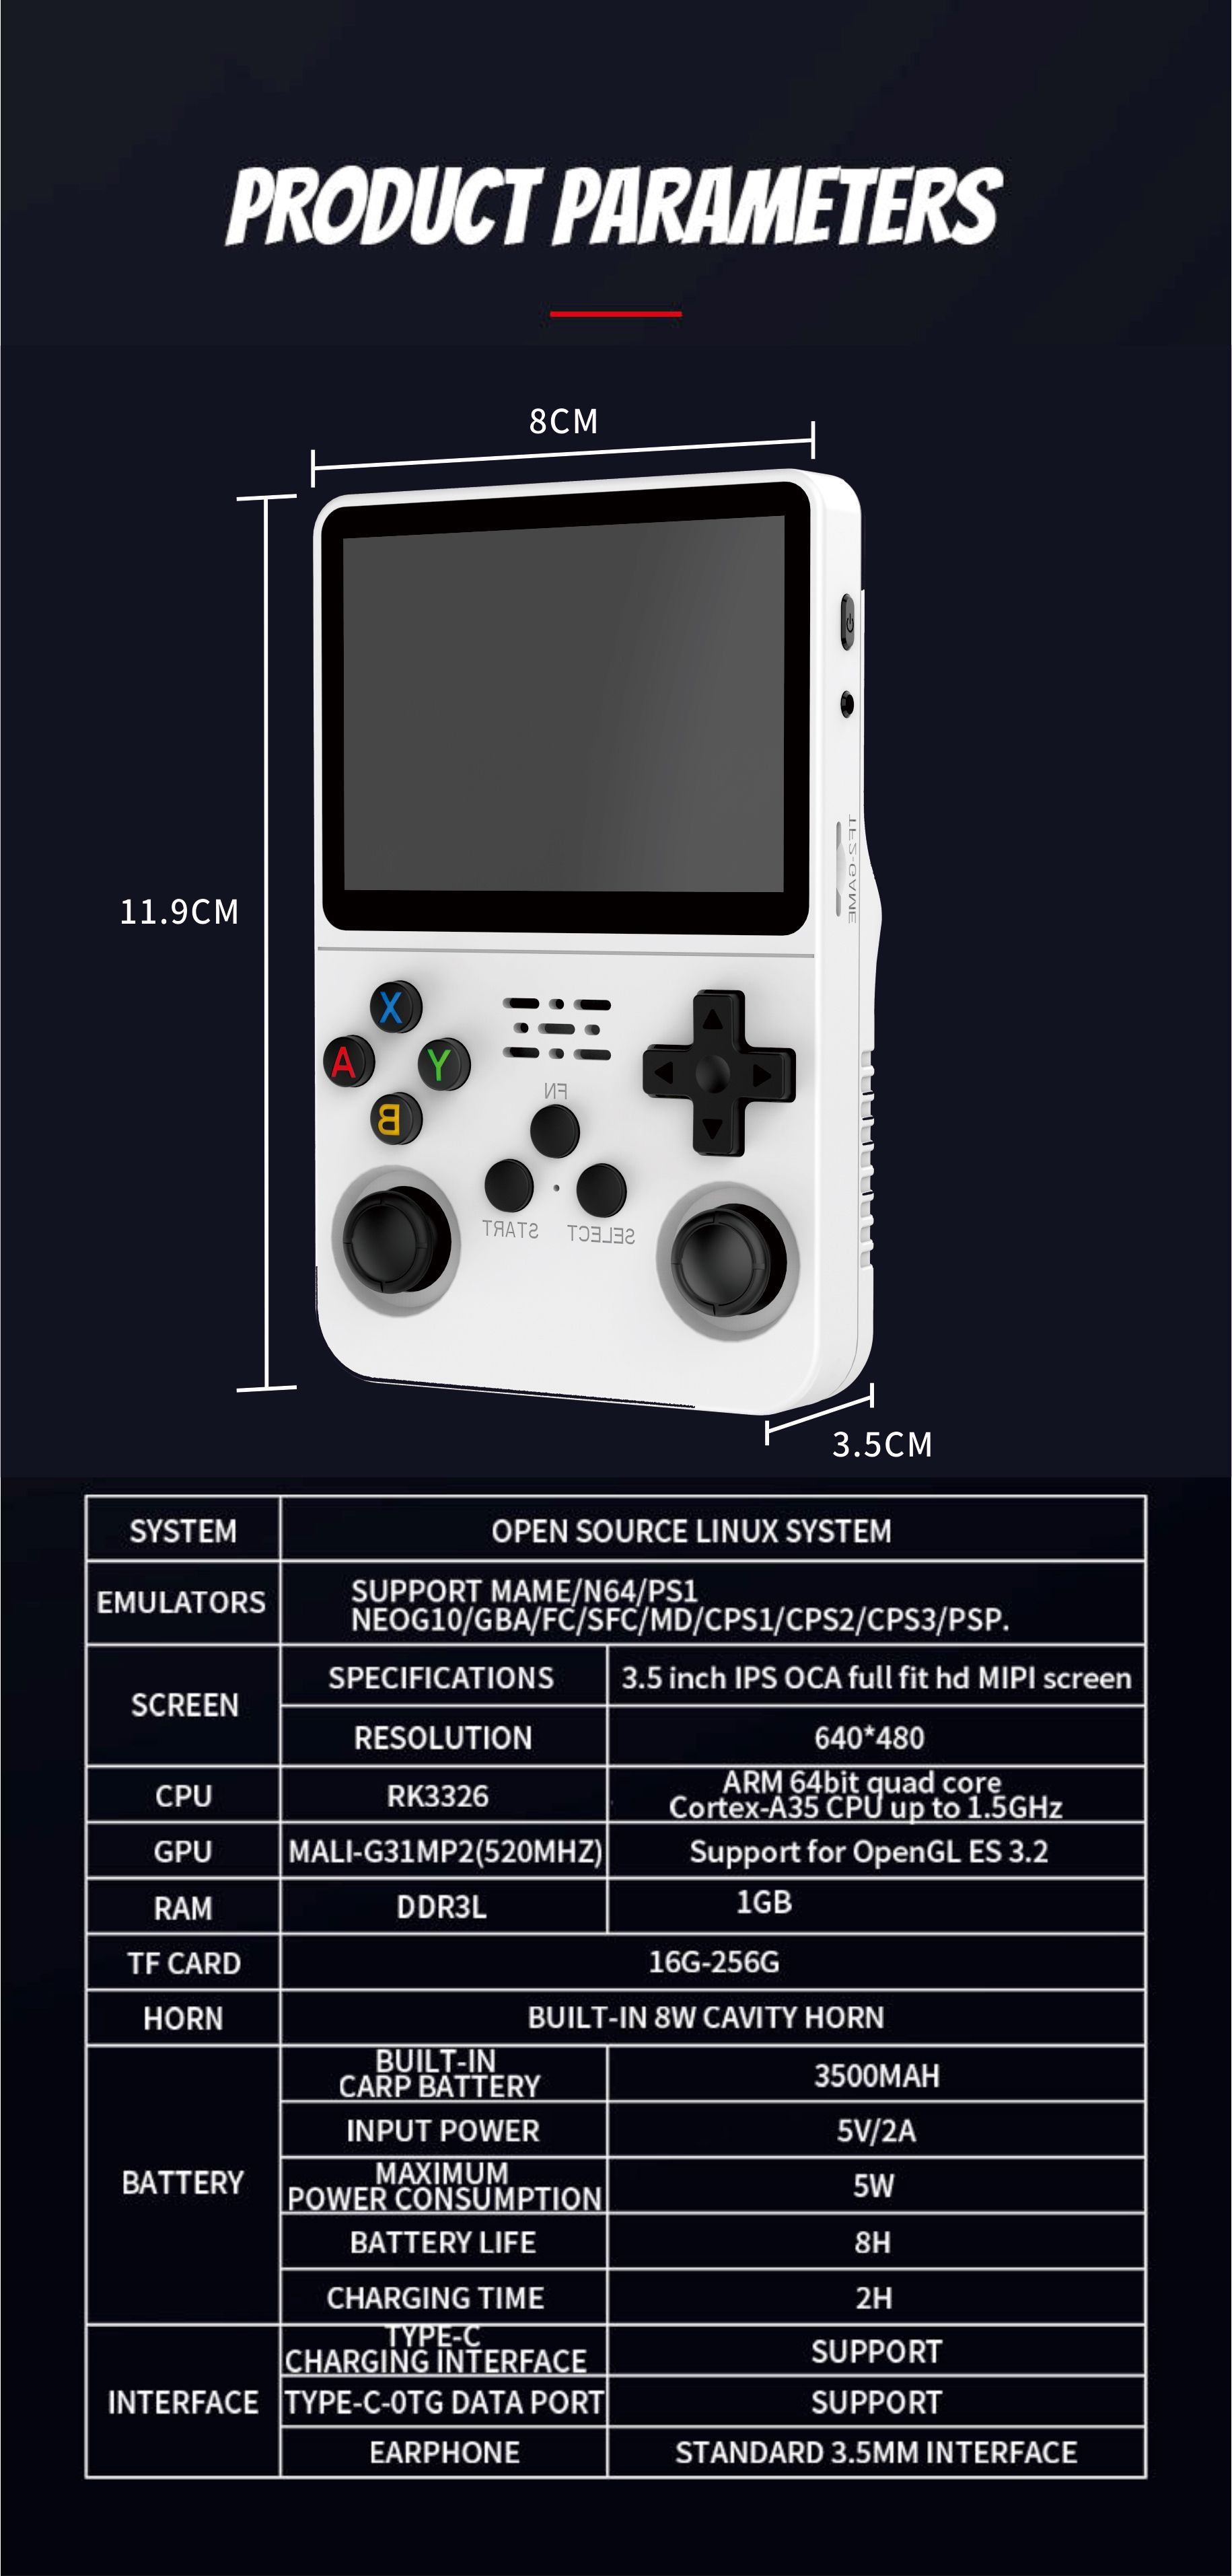 Console de jeu vidéo portable rétro R36S, capacité de 64 go, écran IPS de 3.5 pouces, Console de jeu portable, Open Source, 15000 jeux intégrés